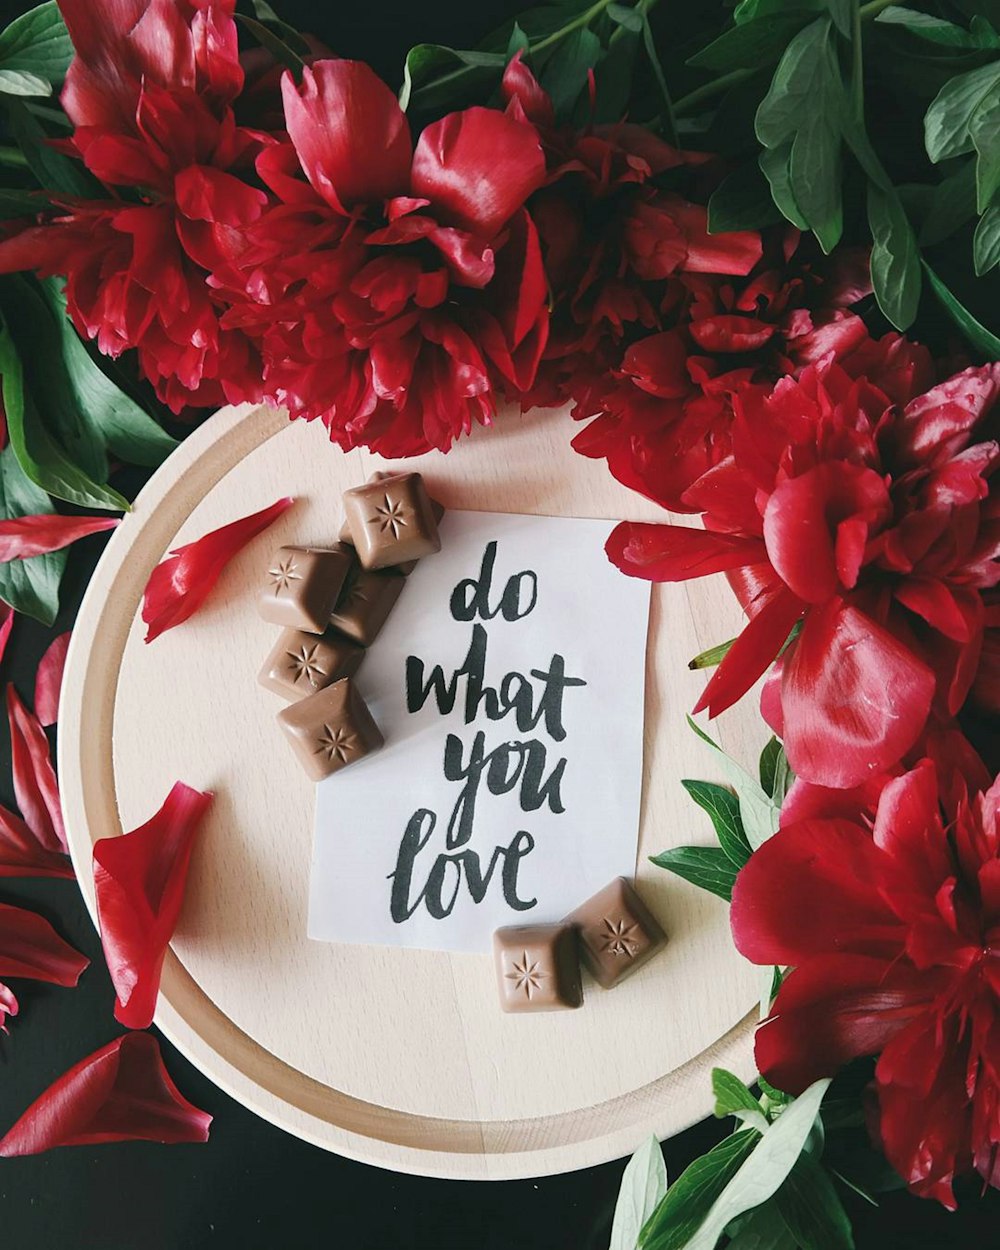 Une note sur un morceau de papier au-dessus d’une assiette à côté de fleurs rouges qui dit « Faites ce que vous aimez ».